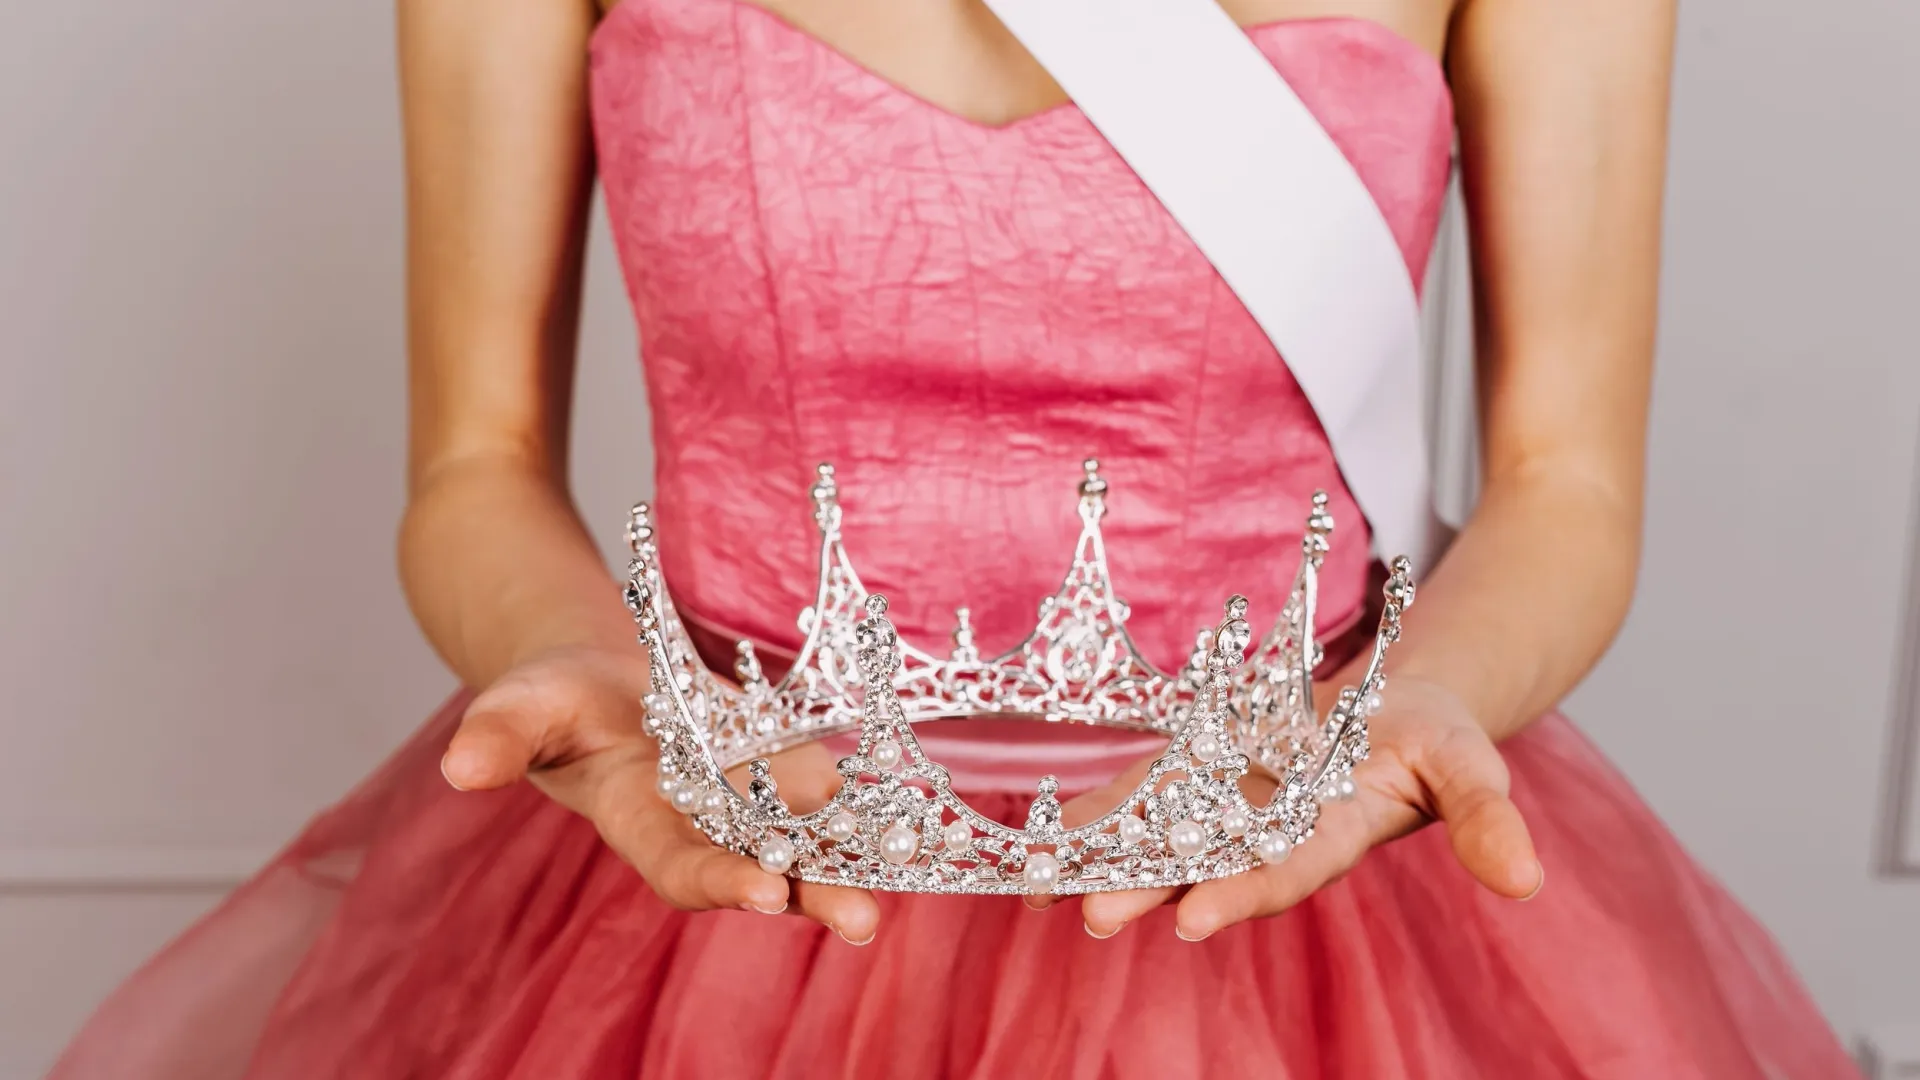 Некоторые женщины сразу надевают на голову корону. Фото: Natalia Bostan / Shutterstock / Fotodom